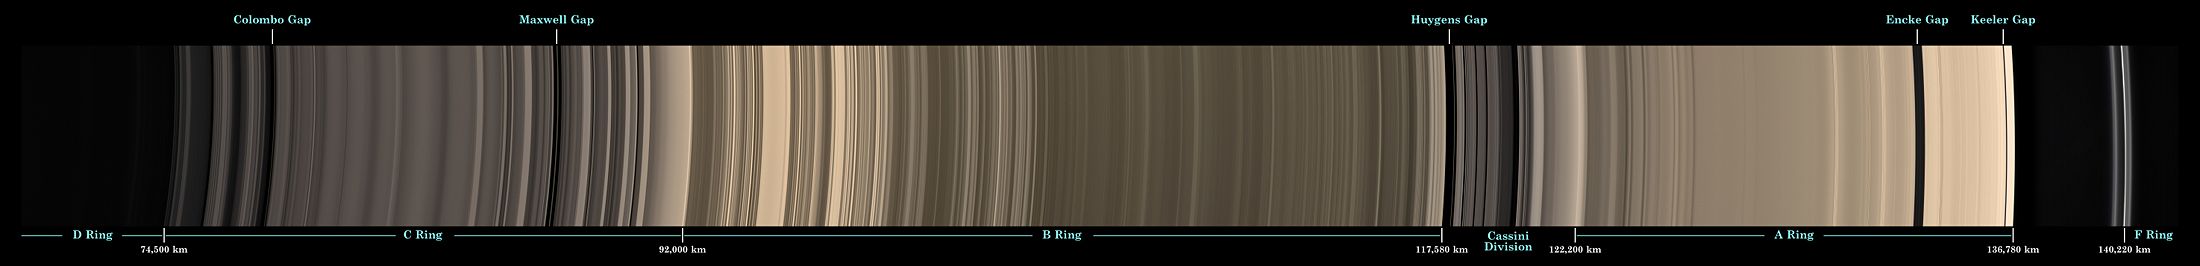 Составное изображение колец Сатурна D, C, B, A и F (слева направо) в натуральных тонах по снимкам  аппарата Кассини на неосвещенной стороне Сатурна, 9 мая 2007.